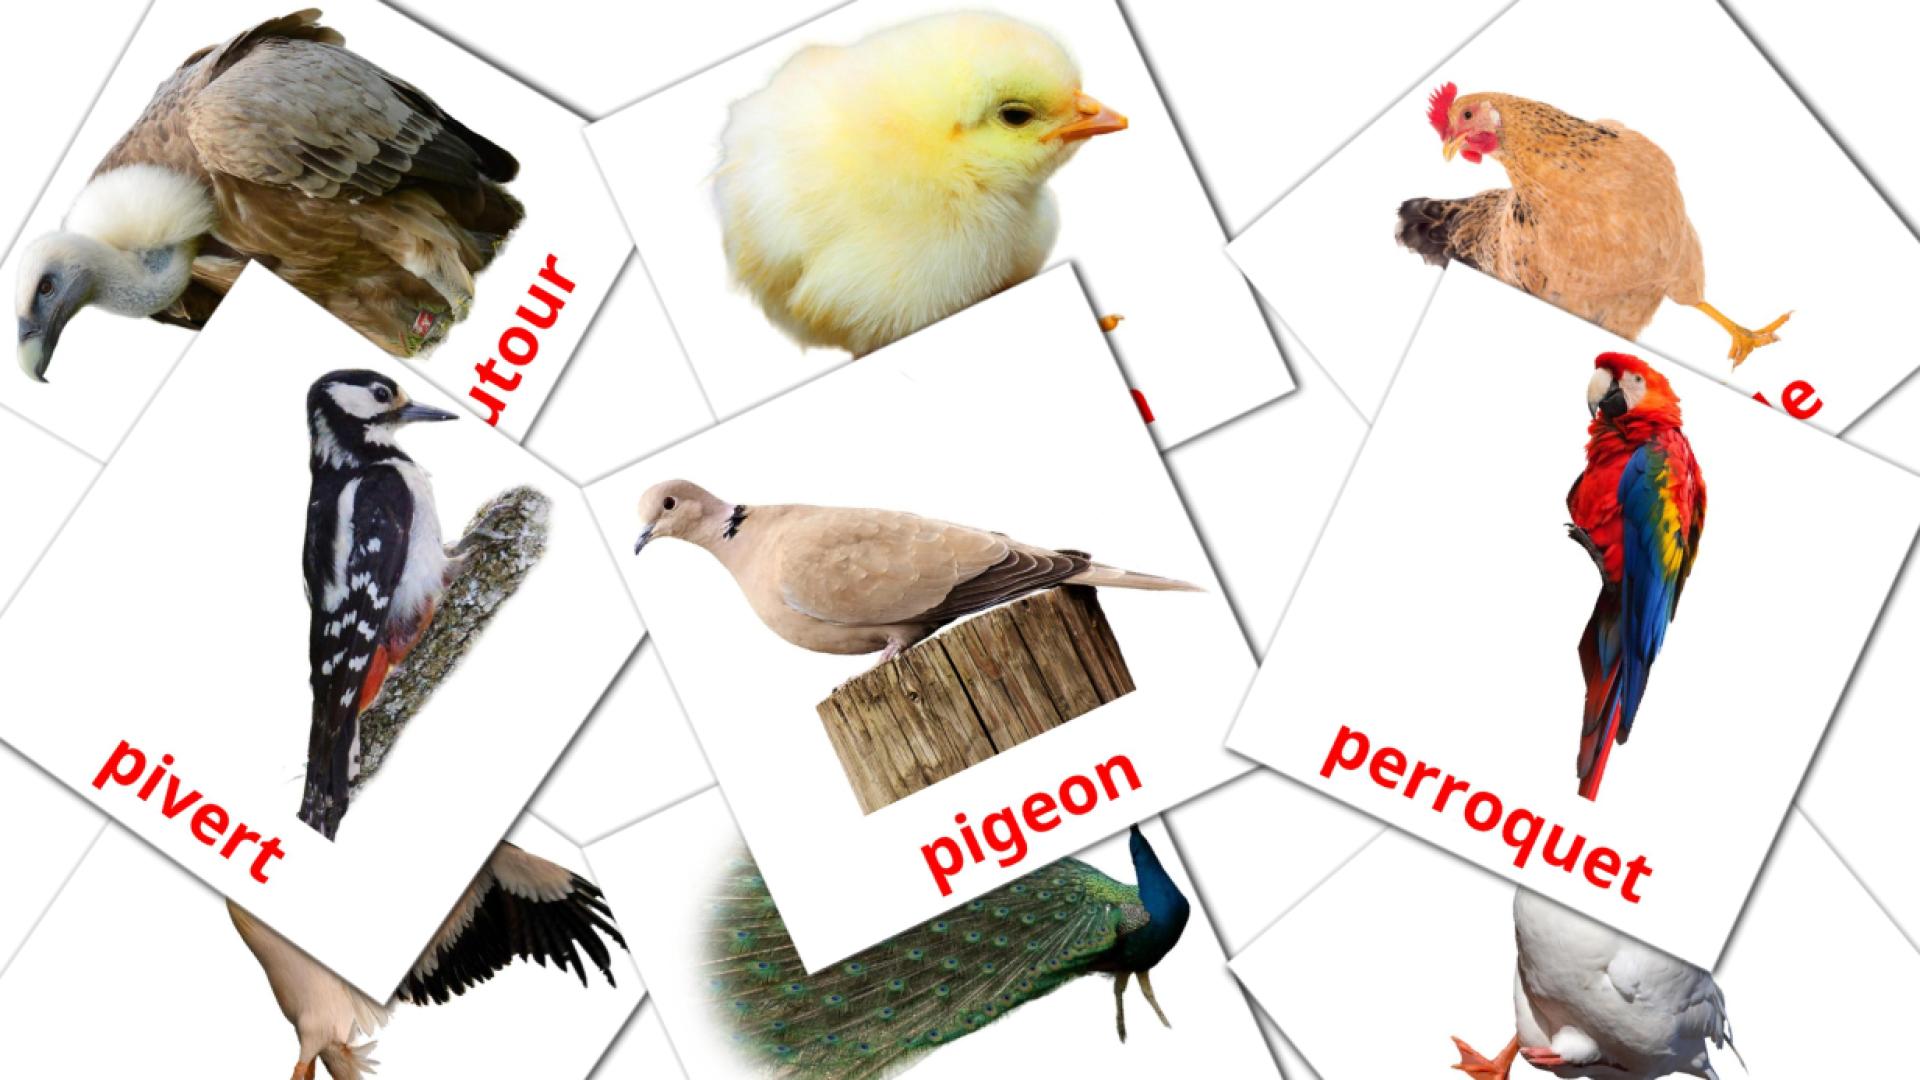 Oiseaux french vocabulary flashcards